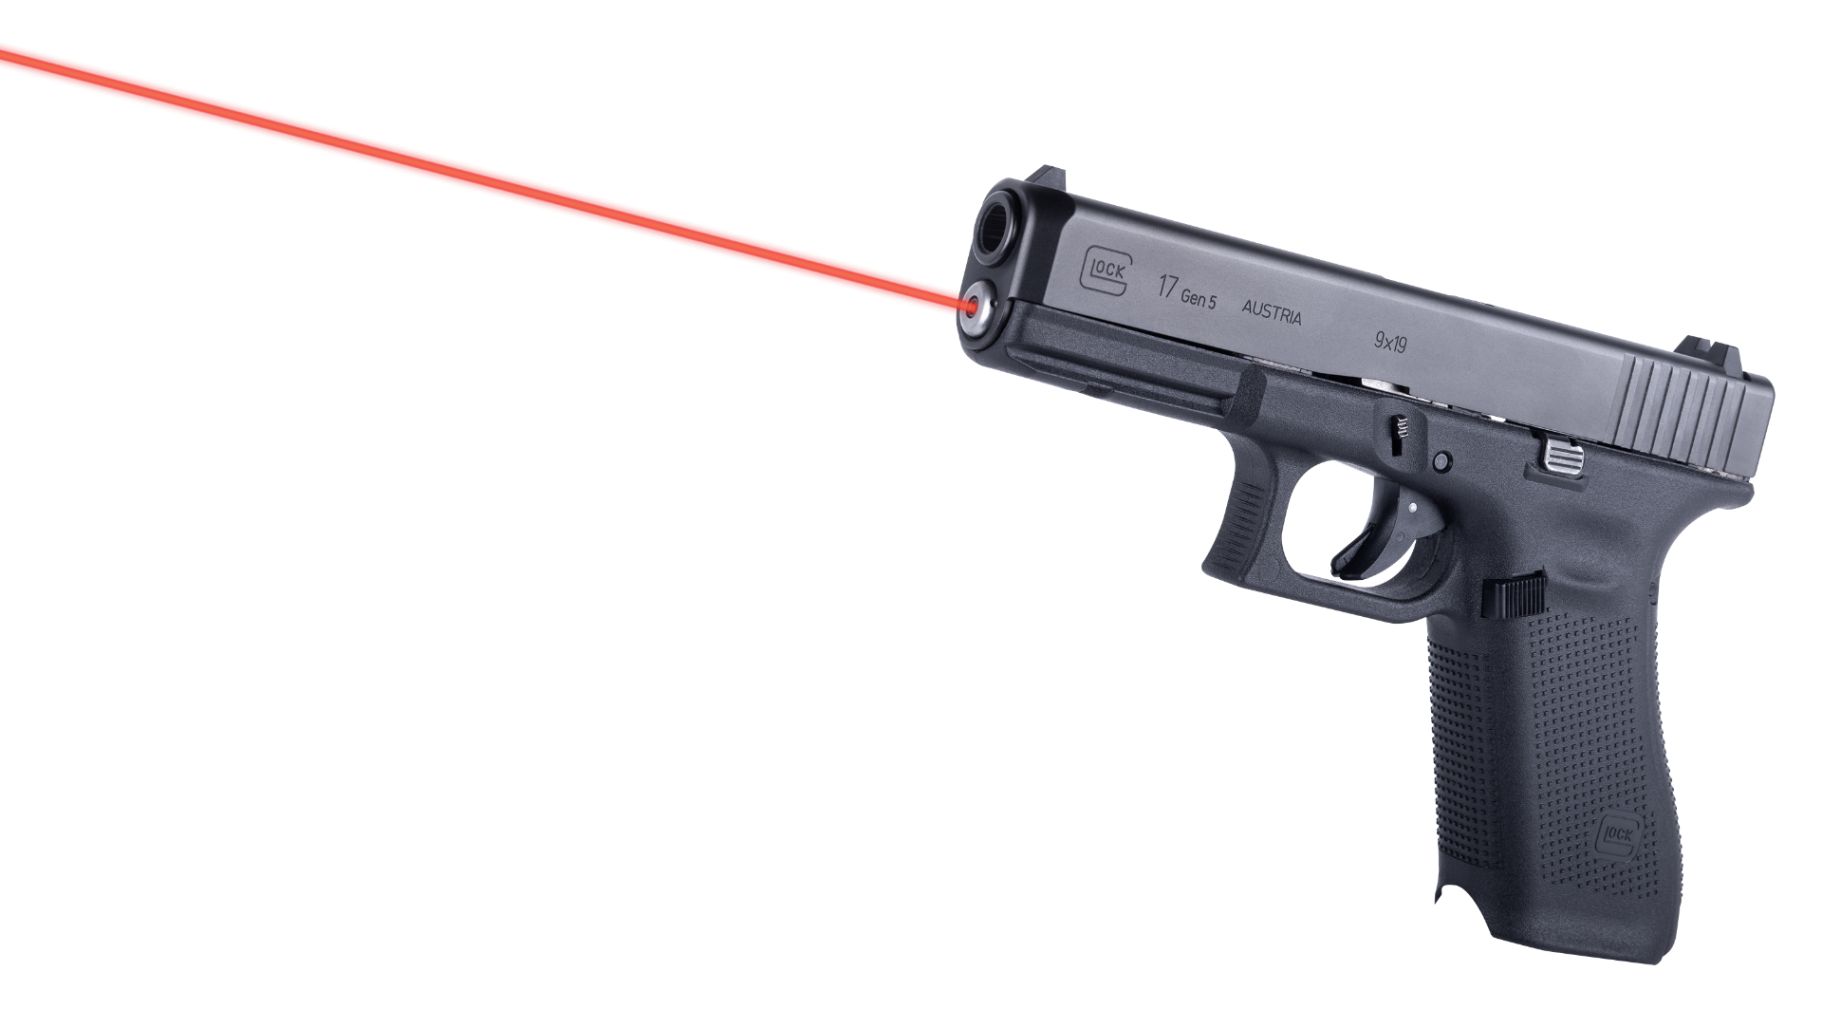 Laserový zaměřovač LaserMax Guide Rod - červený (Glock 17/34 Gen5)